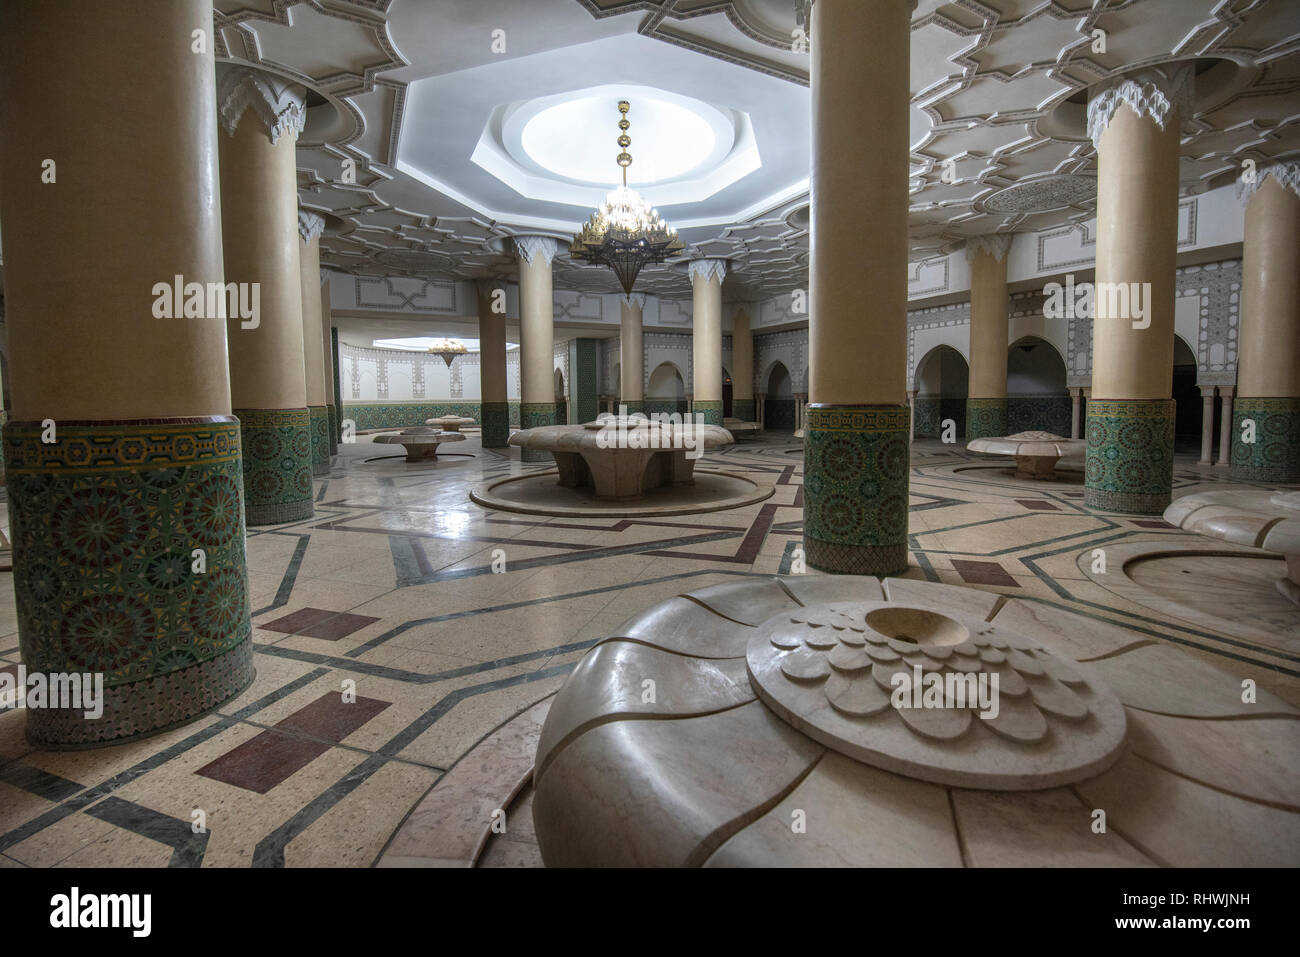 Inside Hassan Ii Mosque Interior Corridor With Columns